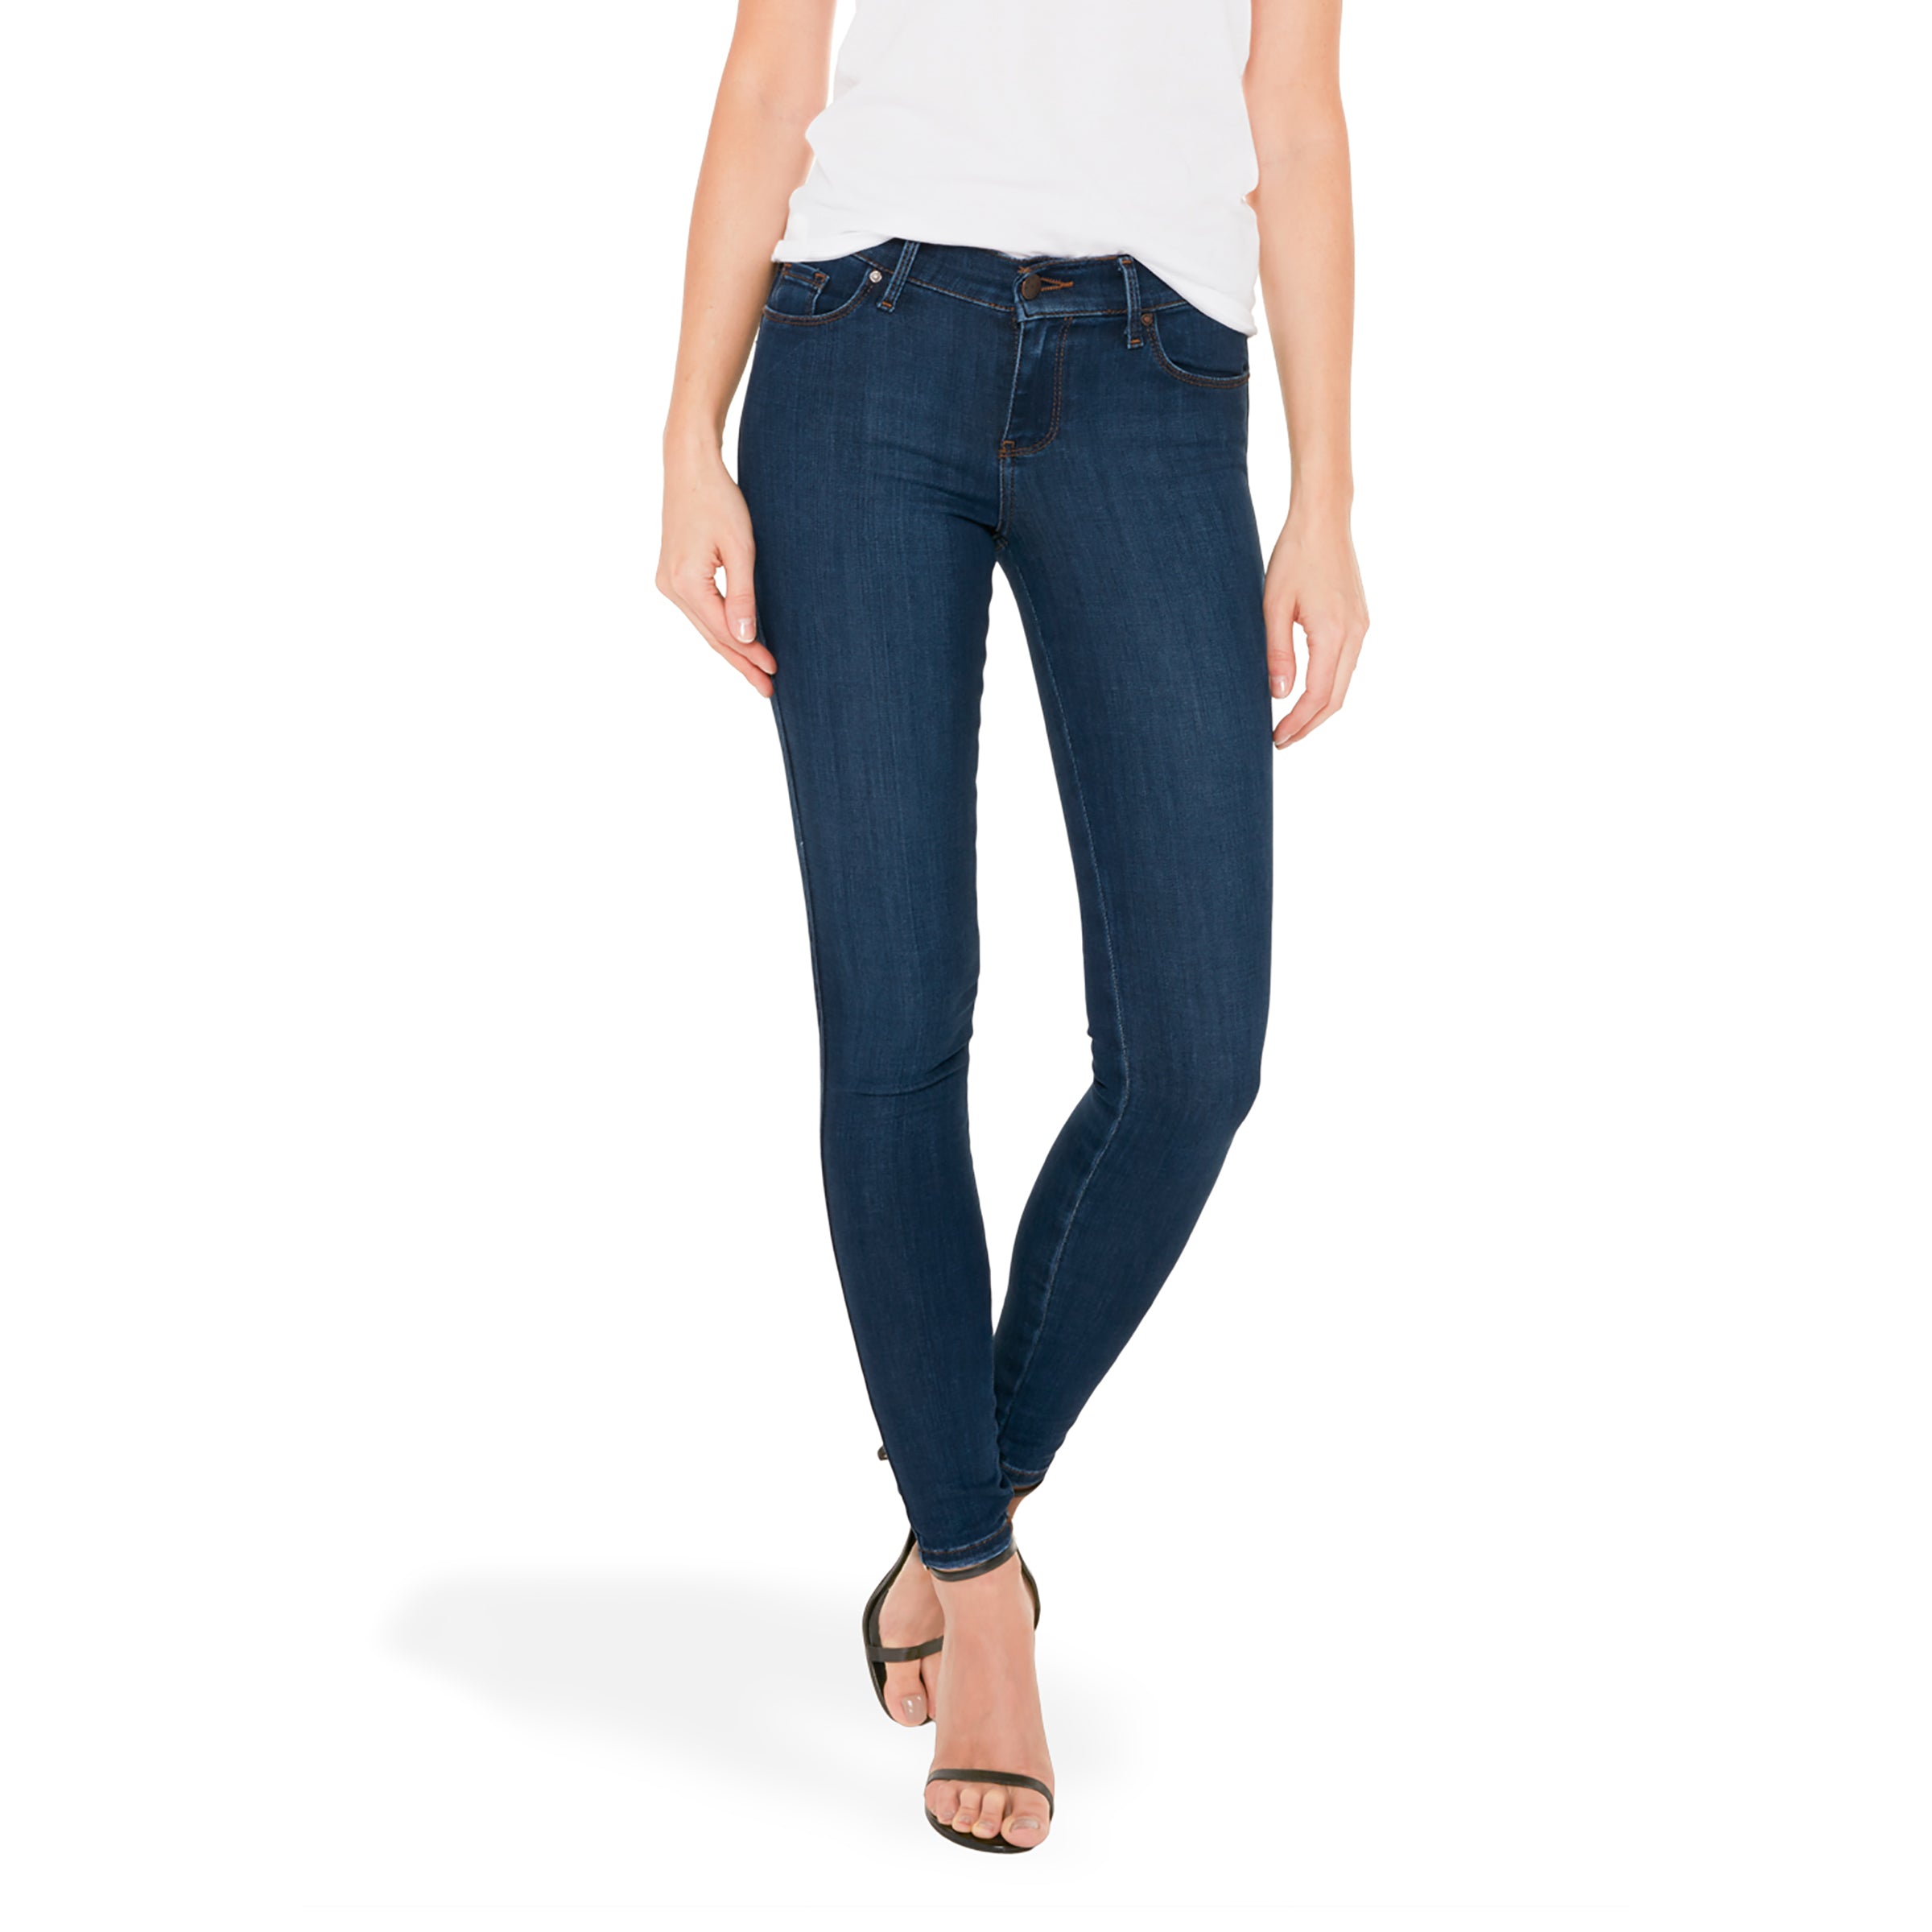 Women wearing Azul medio Mid Rise Skinny Jane Jeans